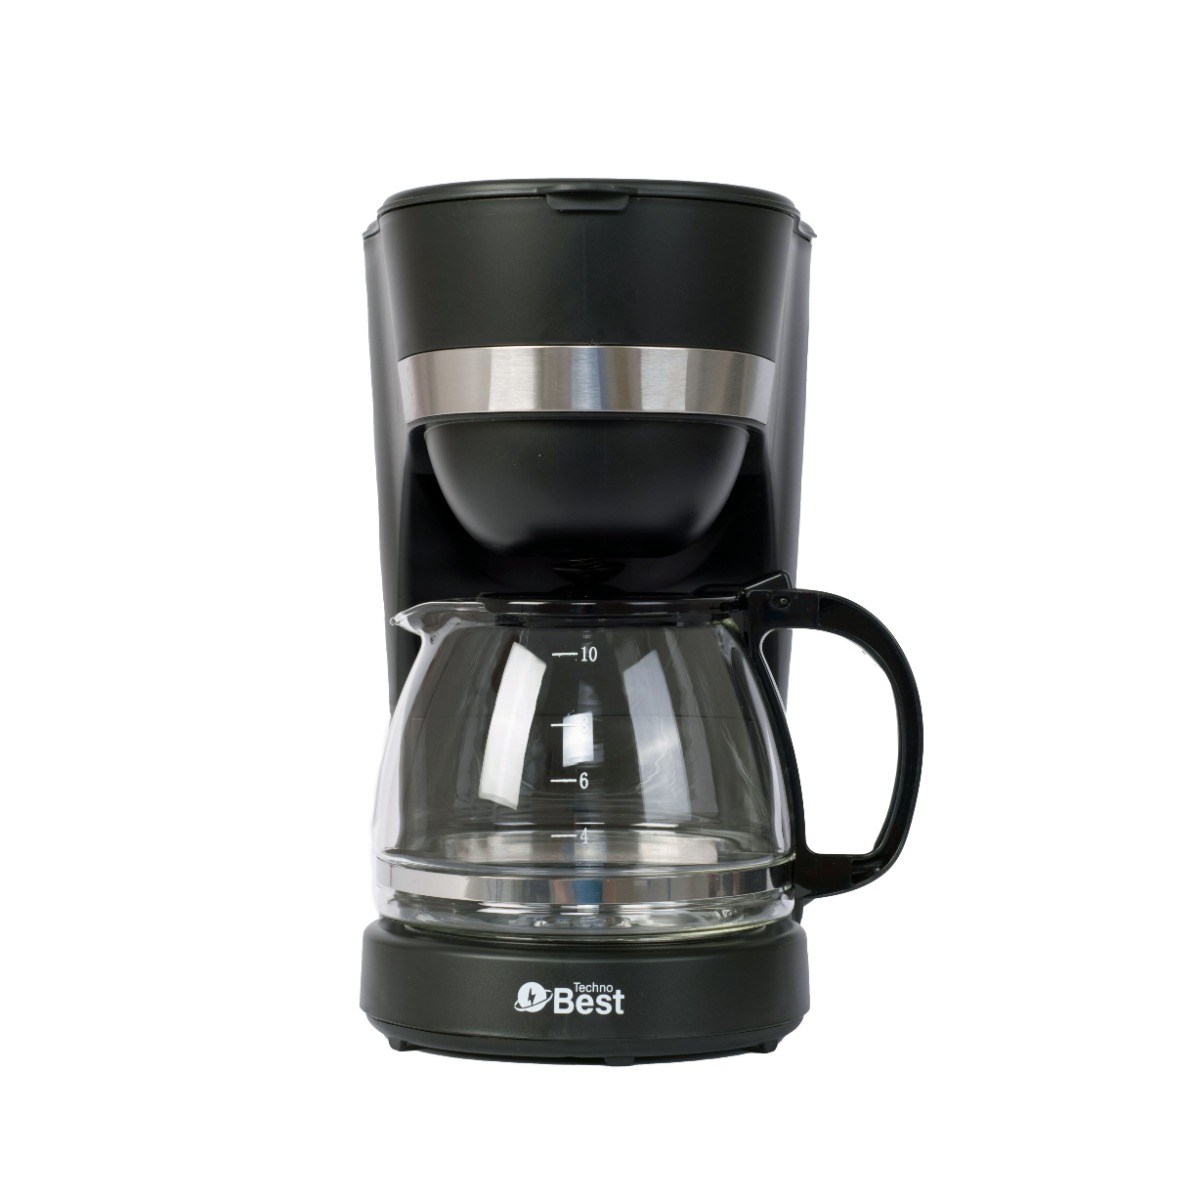 بيست ماكينة صنع القهوة 1.25 لتر,  750 وات, مع وظيفة منع التنقيط,  وعاء زجاجي شفاف, أسود - BCM-001